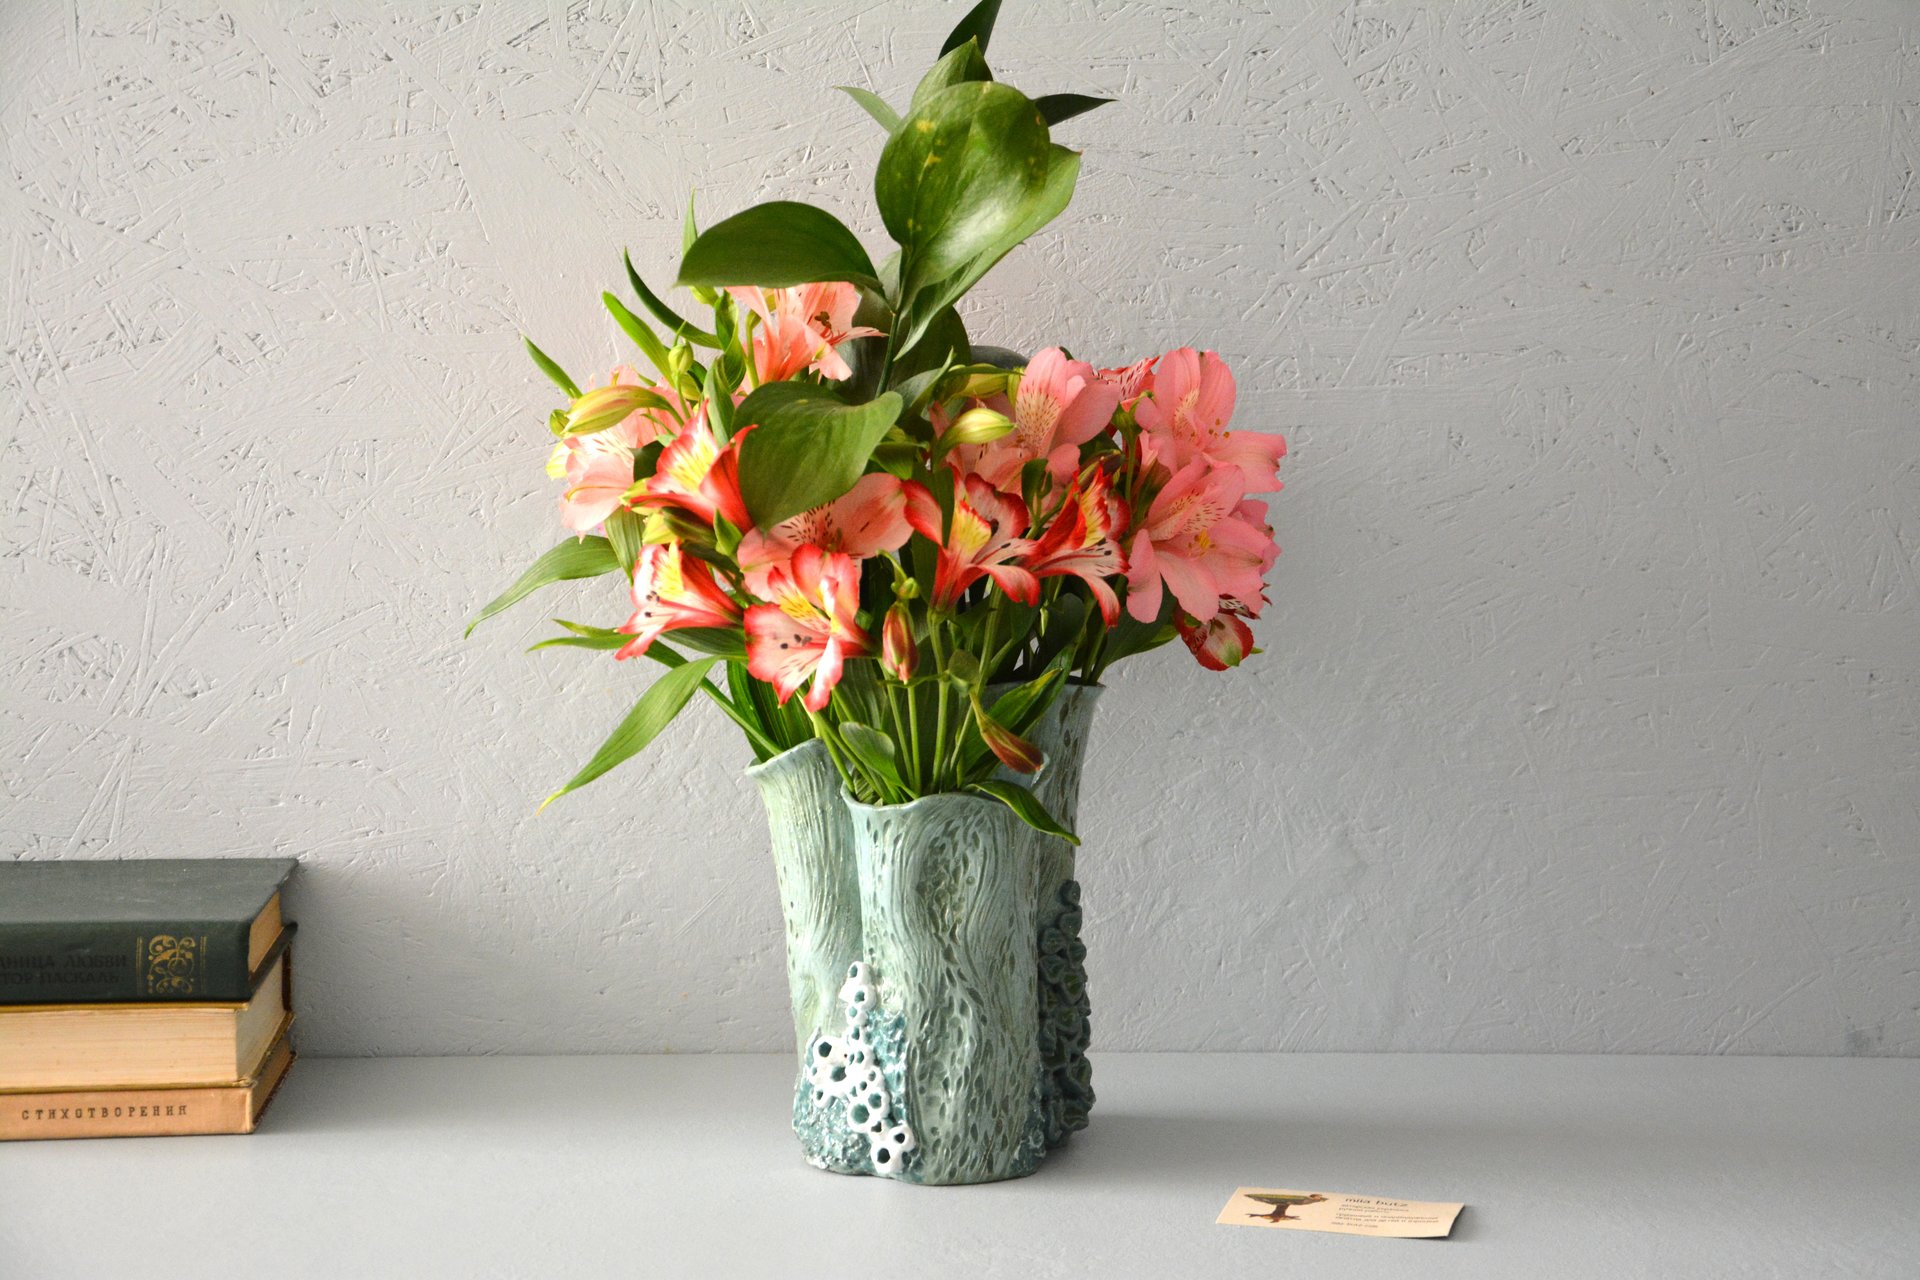 Декоративная керамическая ваза для цветов — Коралл, высота - 19 см, цвет - голубо-зелёный, фото 3 из 5. 1044.